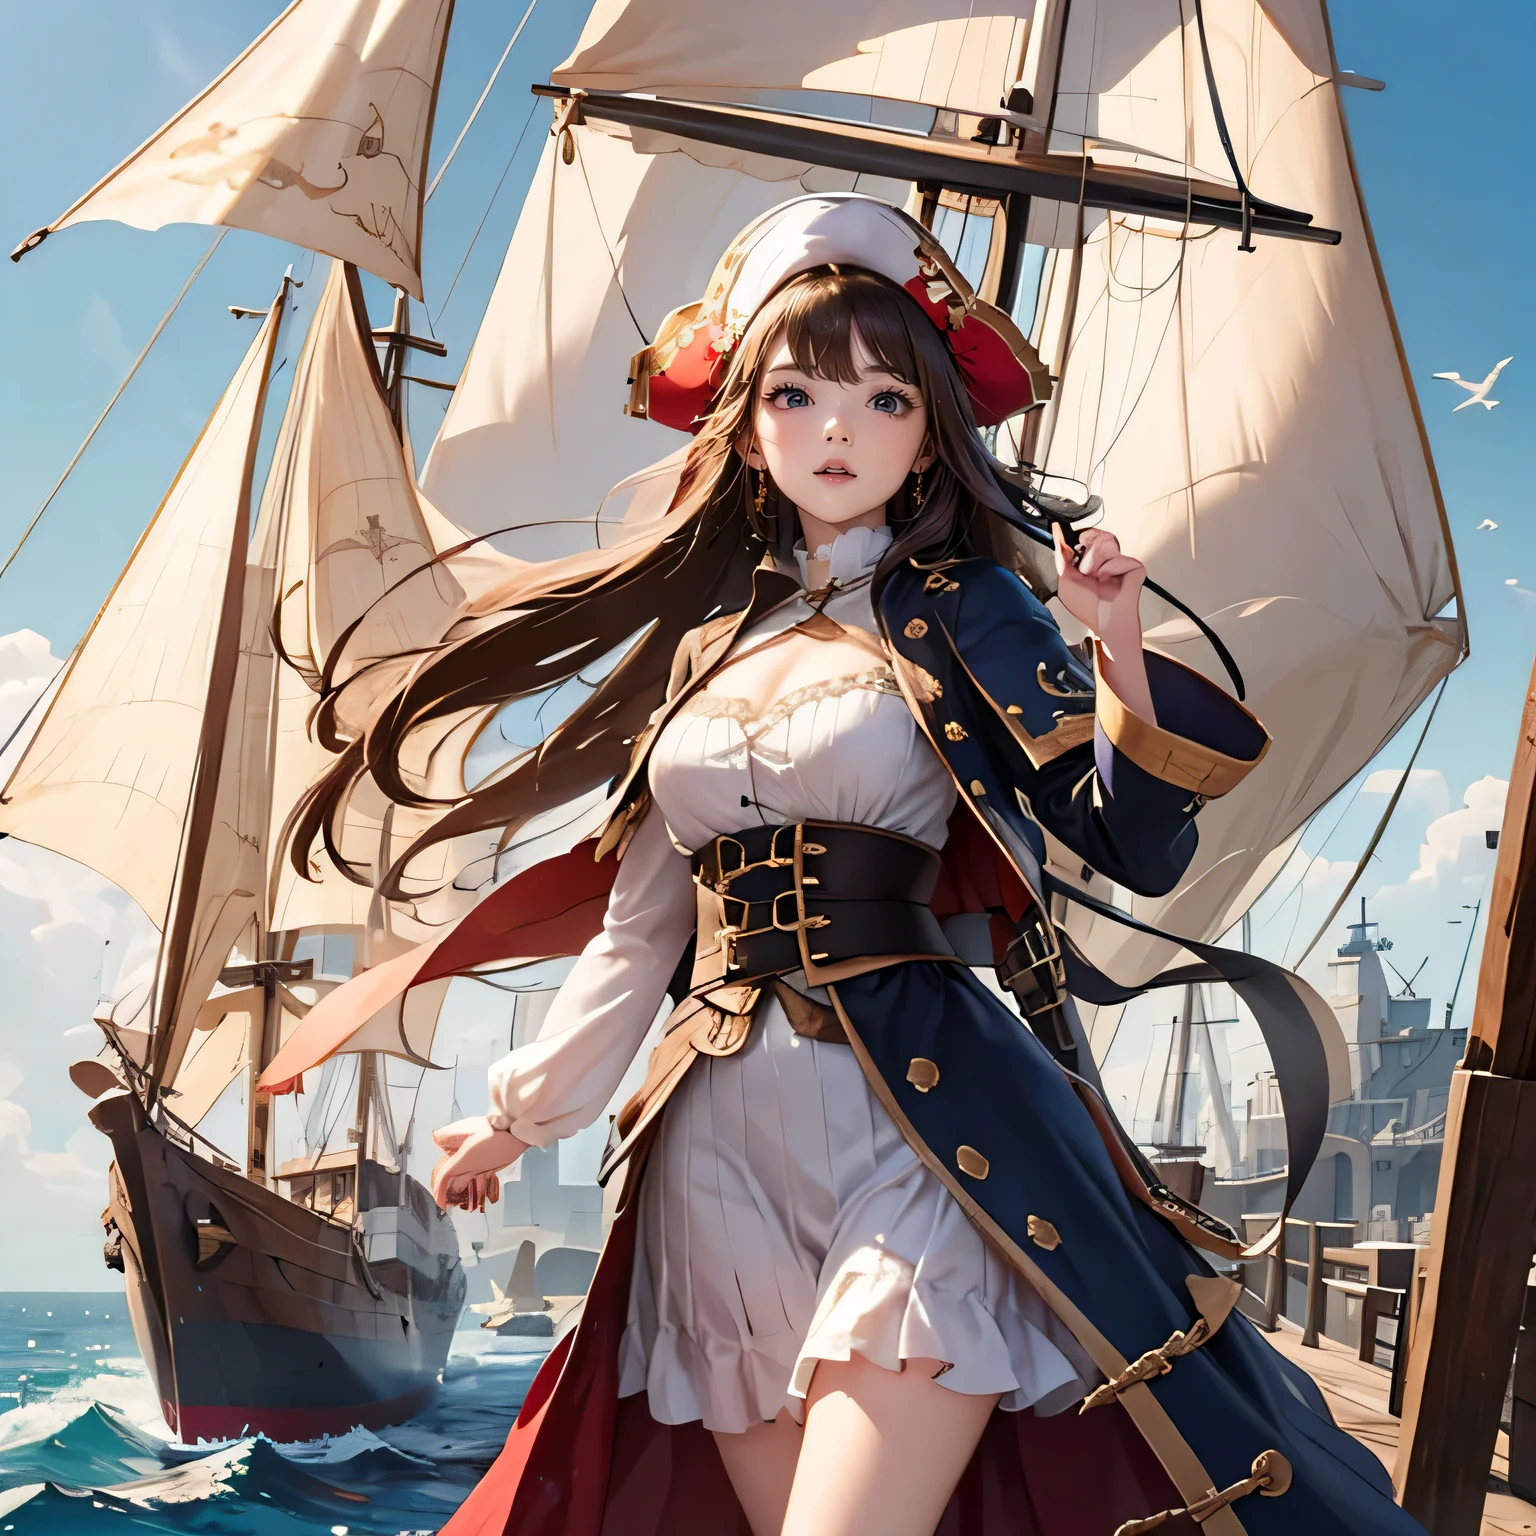 ((中世紀世界)), (成為海賊的貴族女兒, 中世紀歐洲貴族服飾), 在中世紀大航海時代一艘由木頭製成的中世紀大帆船的甲板上, 有风, 幾個水手, 很多貨物,